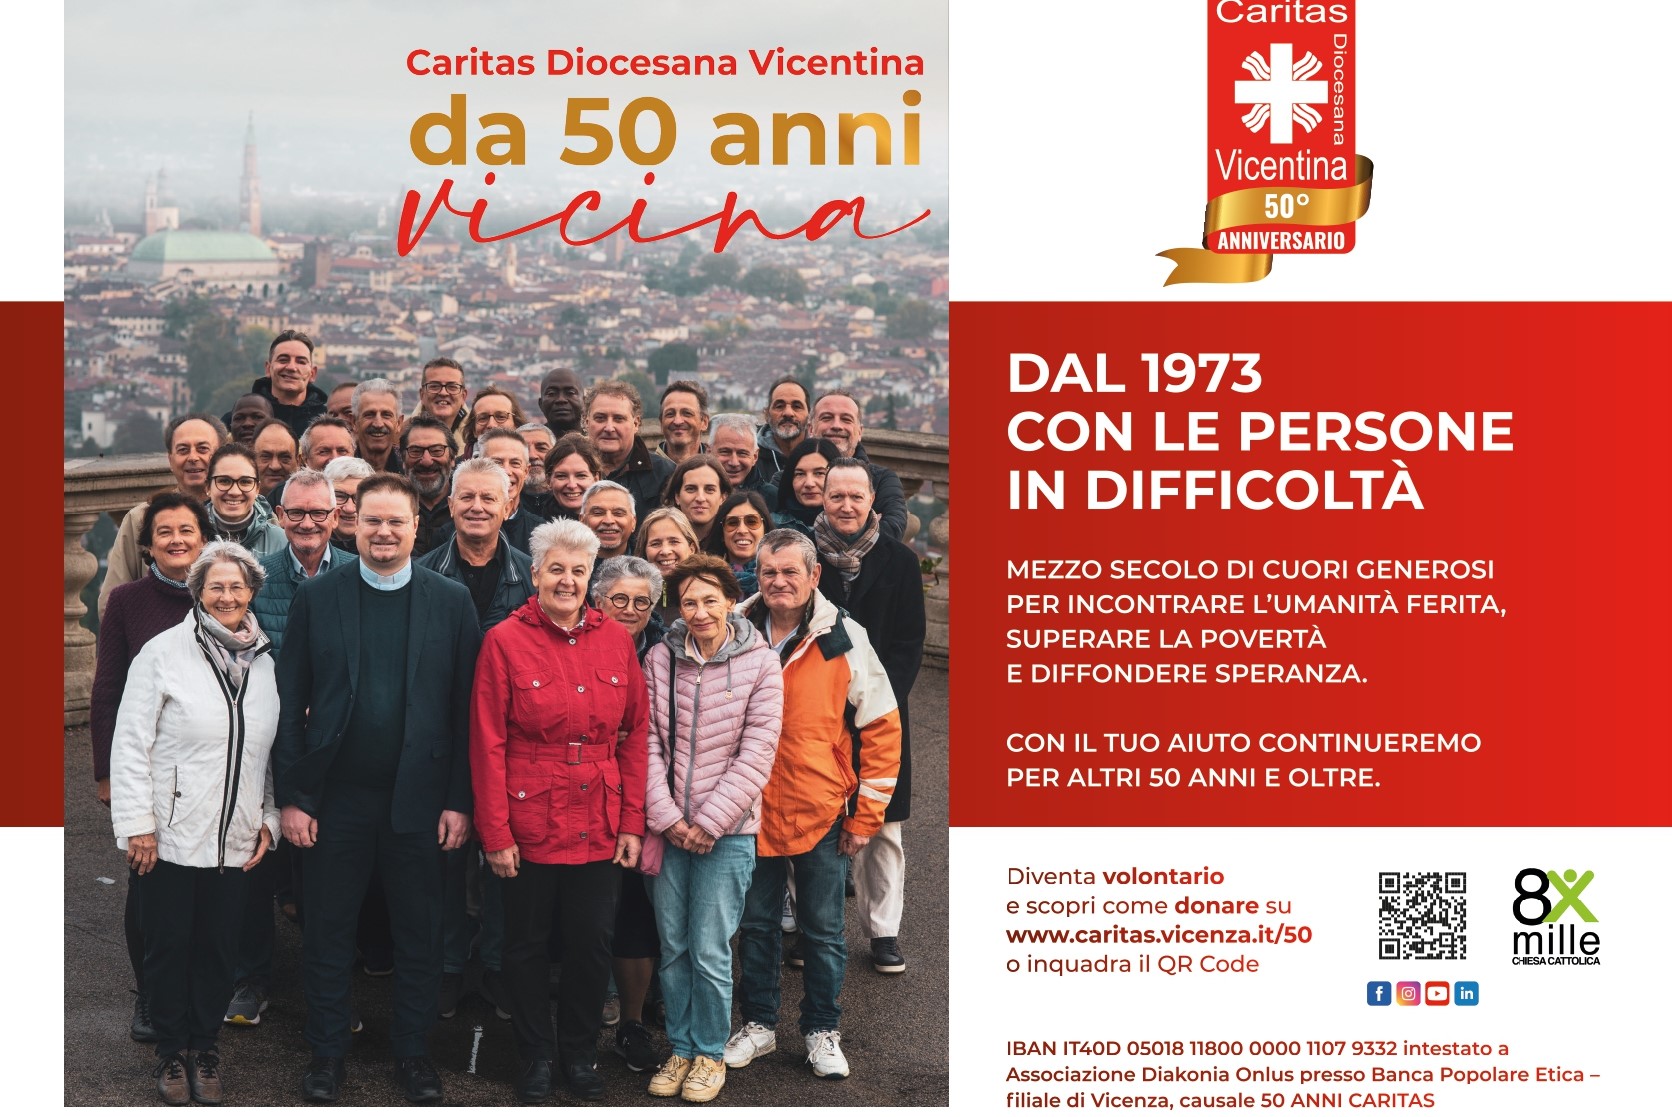 50 anni di Caritas Diocesana Vicentina, al via una nuova campagna di raccolta fondi e di invito al volontariato